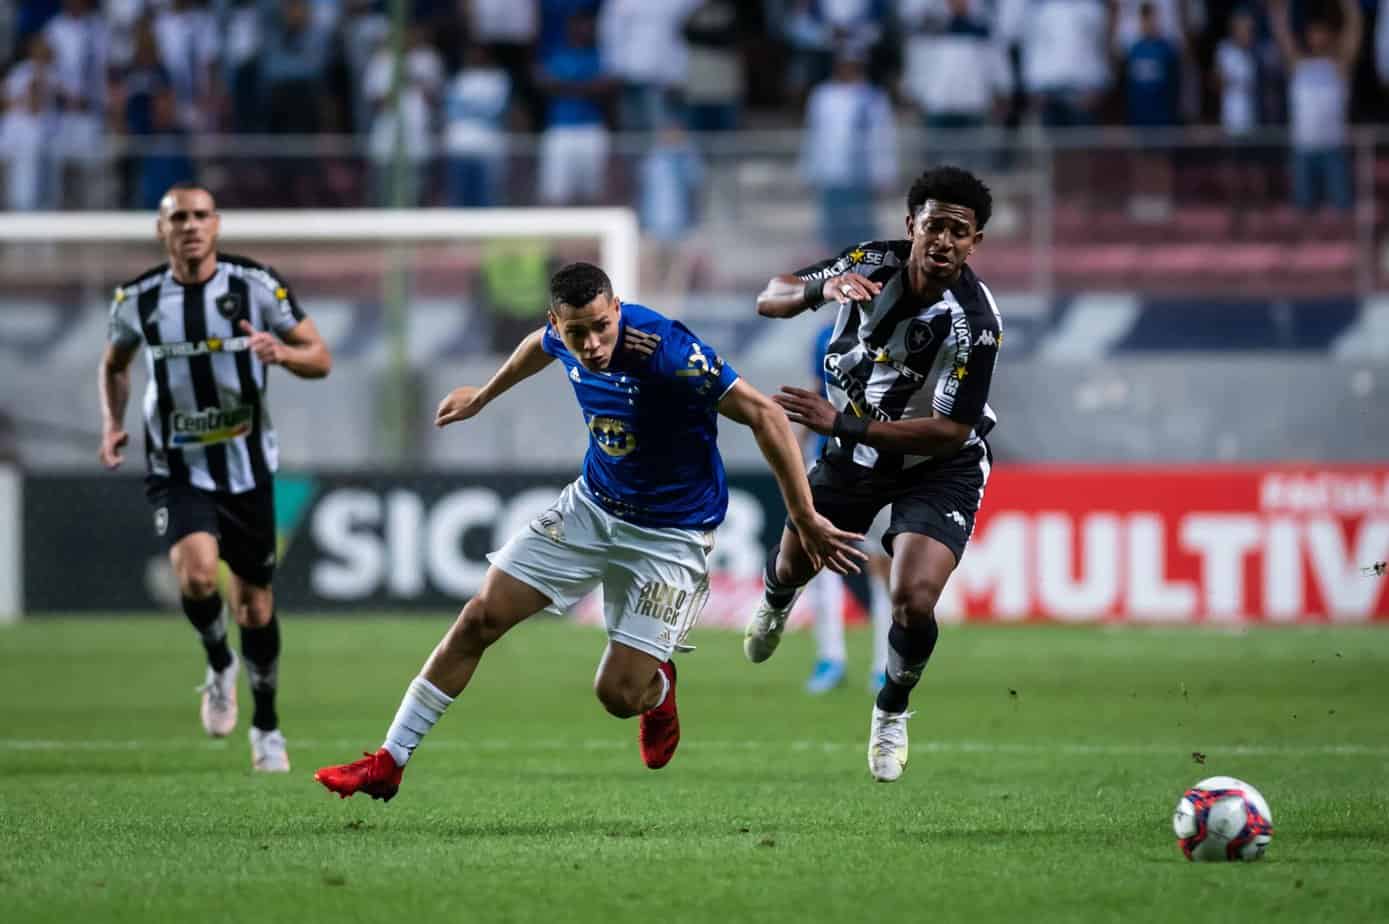 Cuotas de Apuestas para Botafogo contra Cruzeiro y Pronóstico Gratis